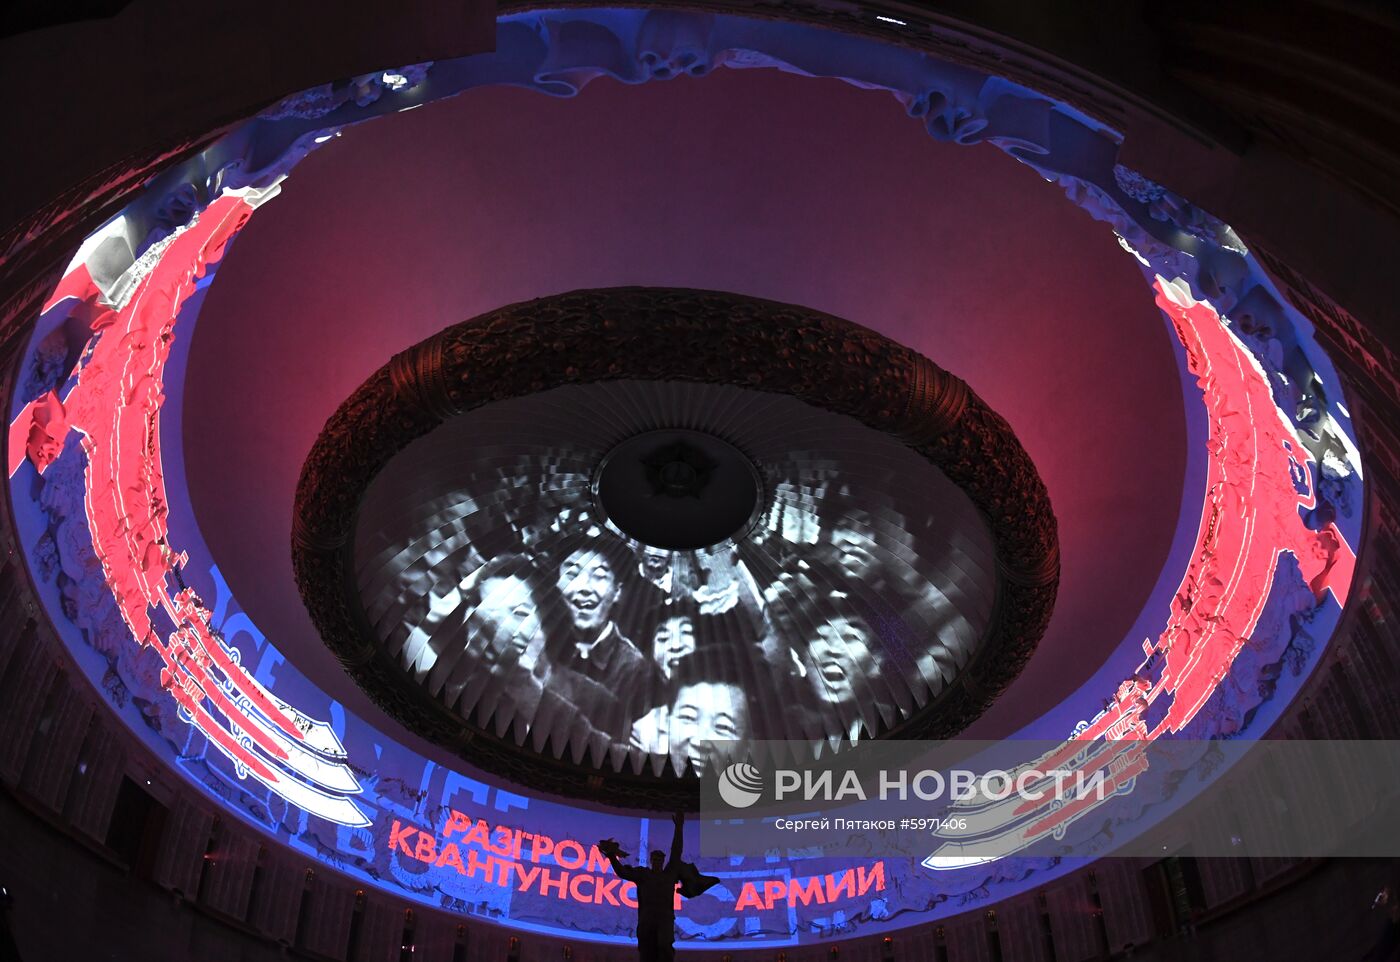 Презентация инсталляции "Дальневосточный финал" в Музее Победы